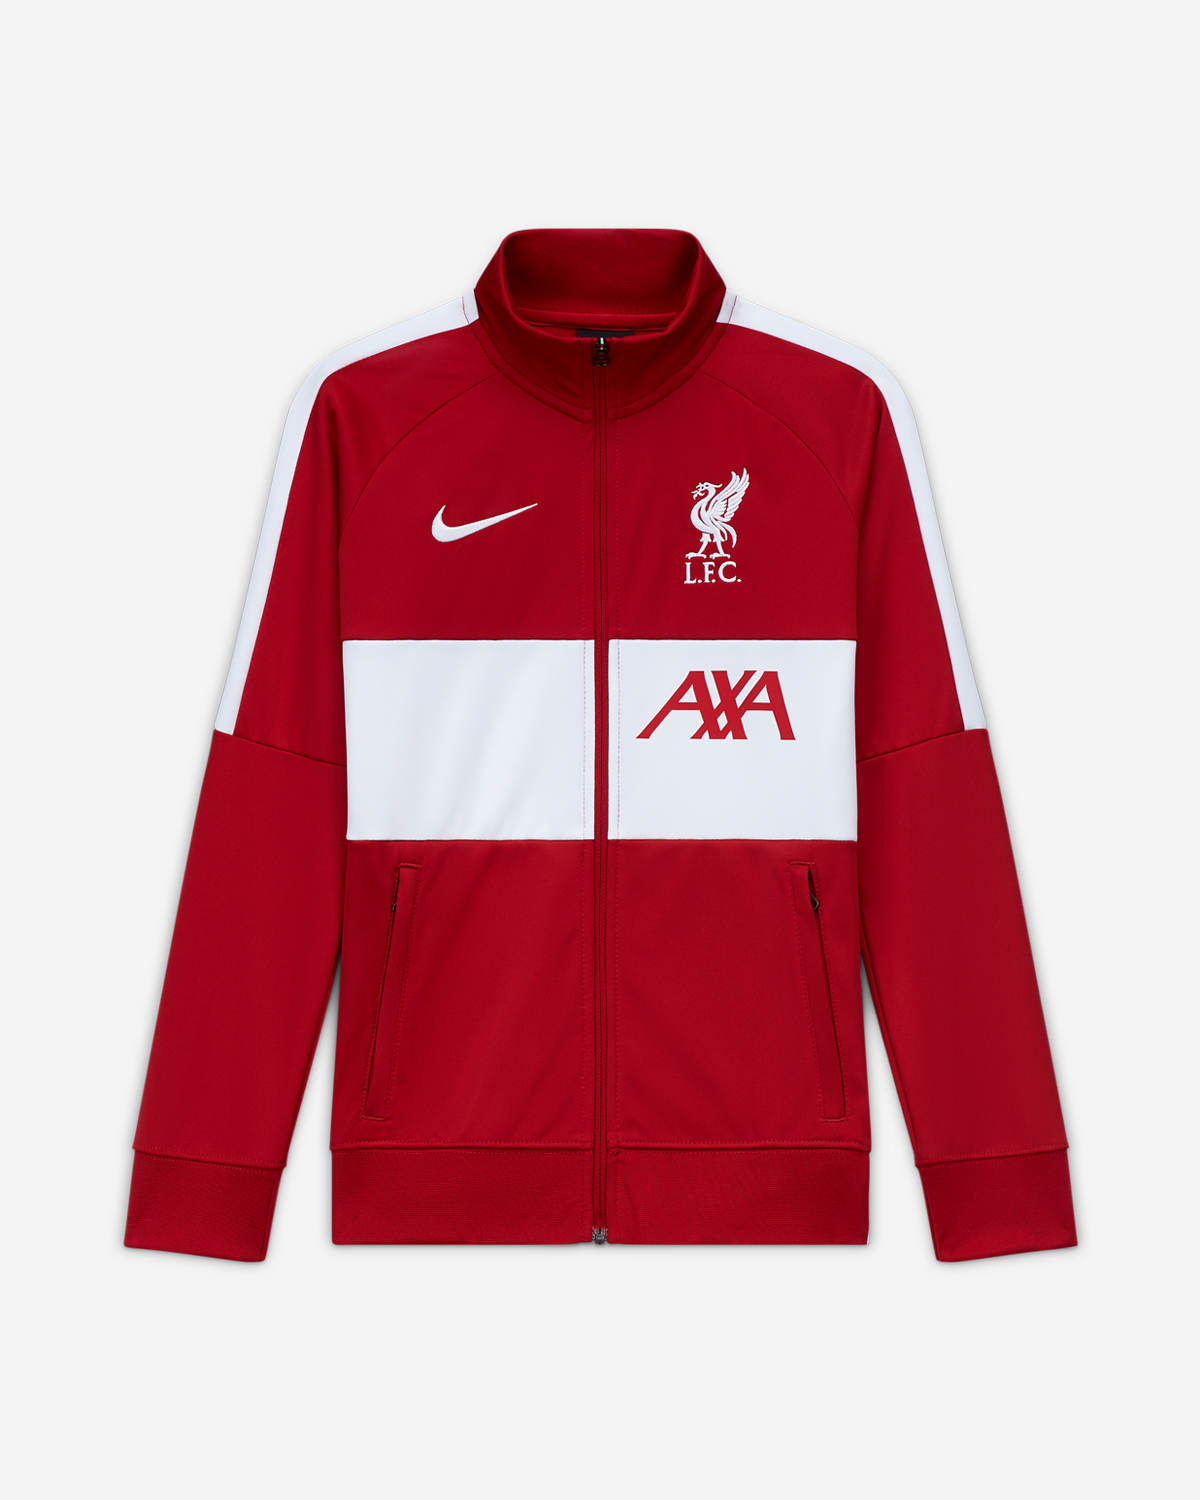 LFC Nike Junior Red Anthem Jacket